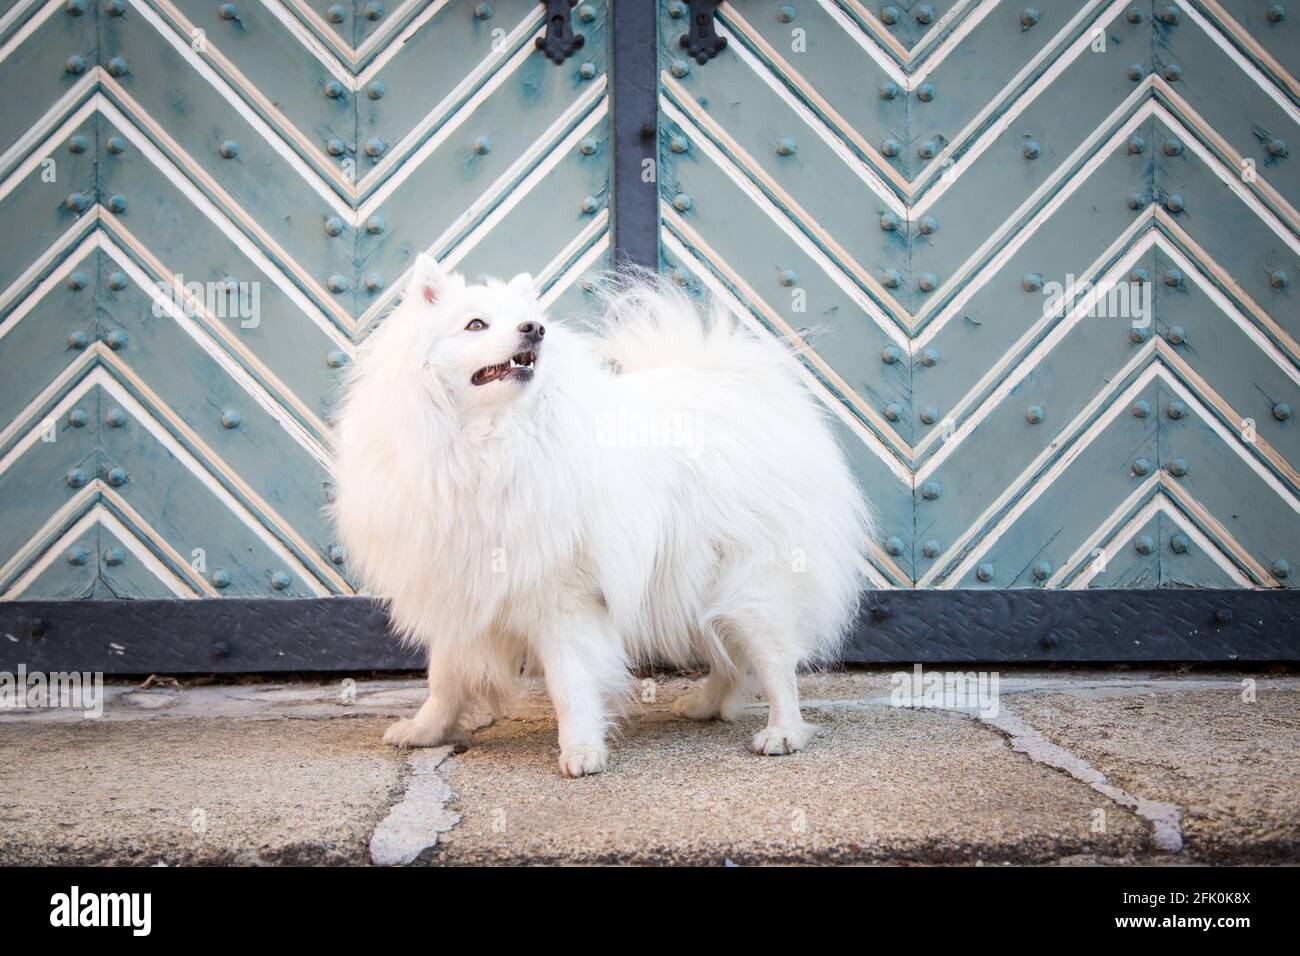 Bianco giapponese Spitz in posa nella città di Weitra, Austria. Fotografia di cane urbano Foto Stock